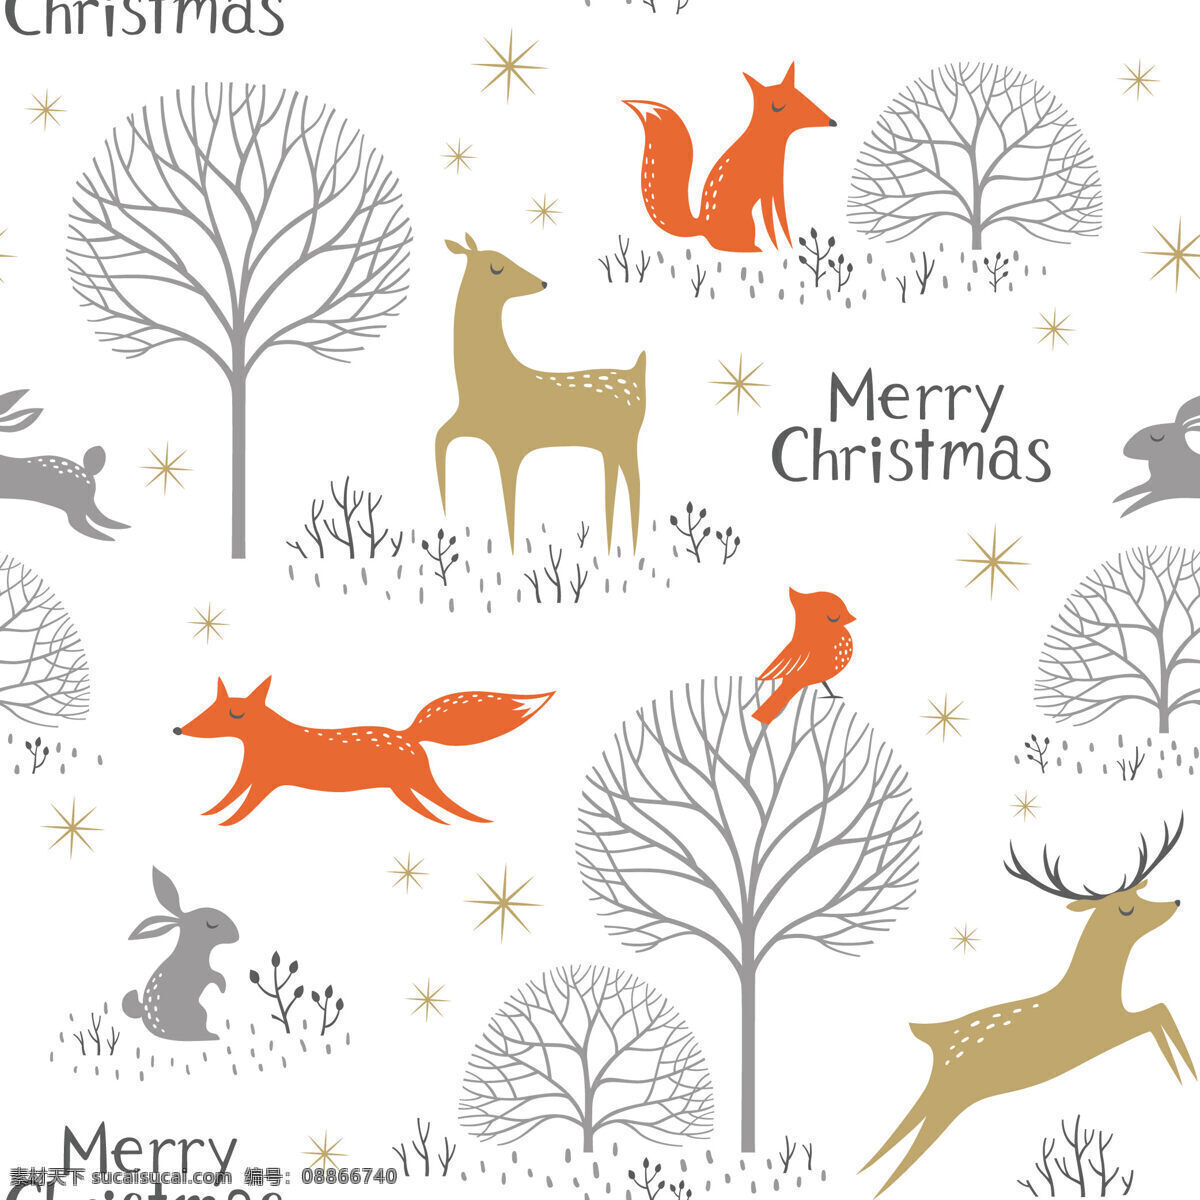 圣诞 元素 清新 壁纸 小鹿 图案 装饰设计 松树 狐狸 小兔子 英文 圣诞快乐 壁纸图案